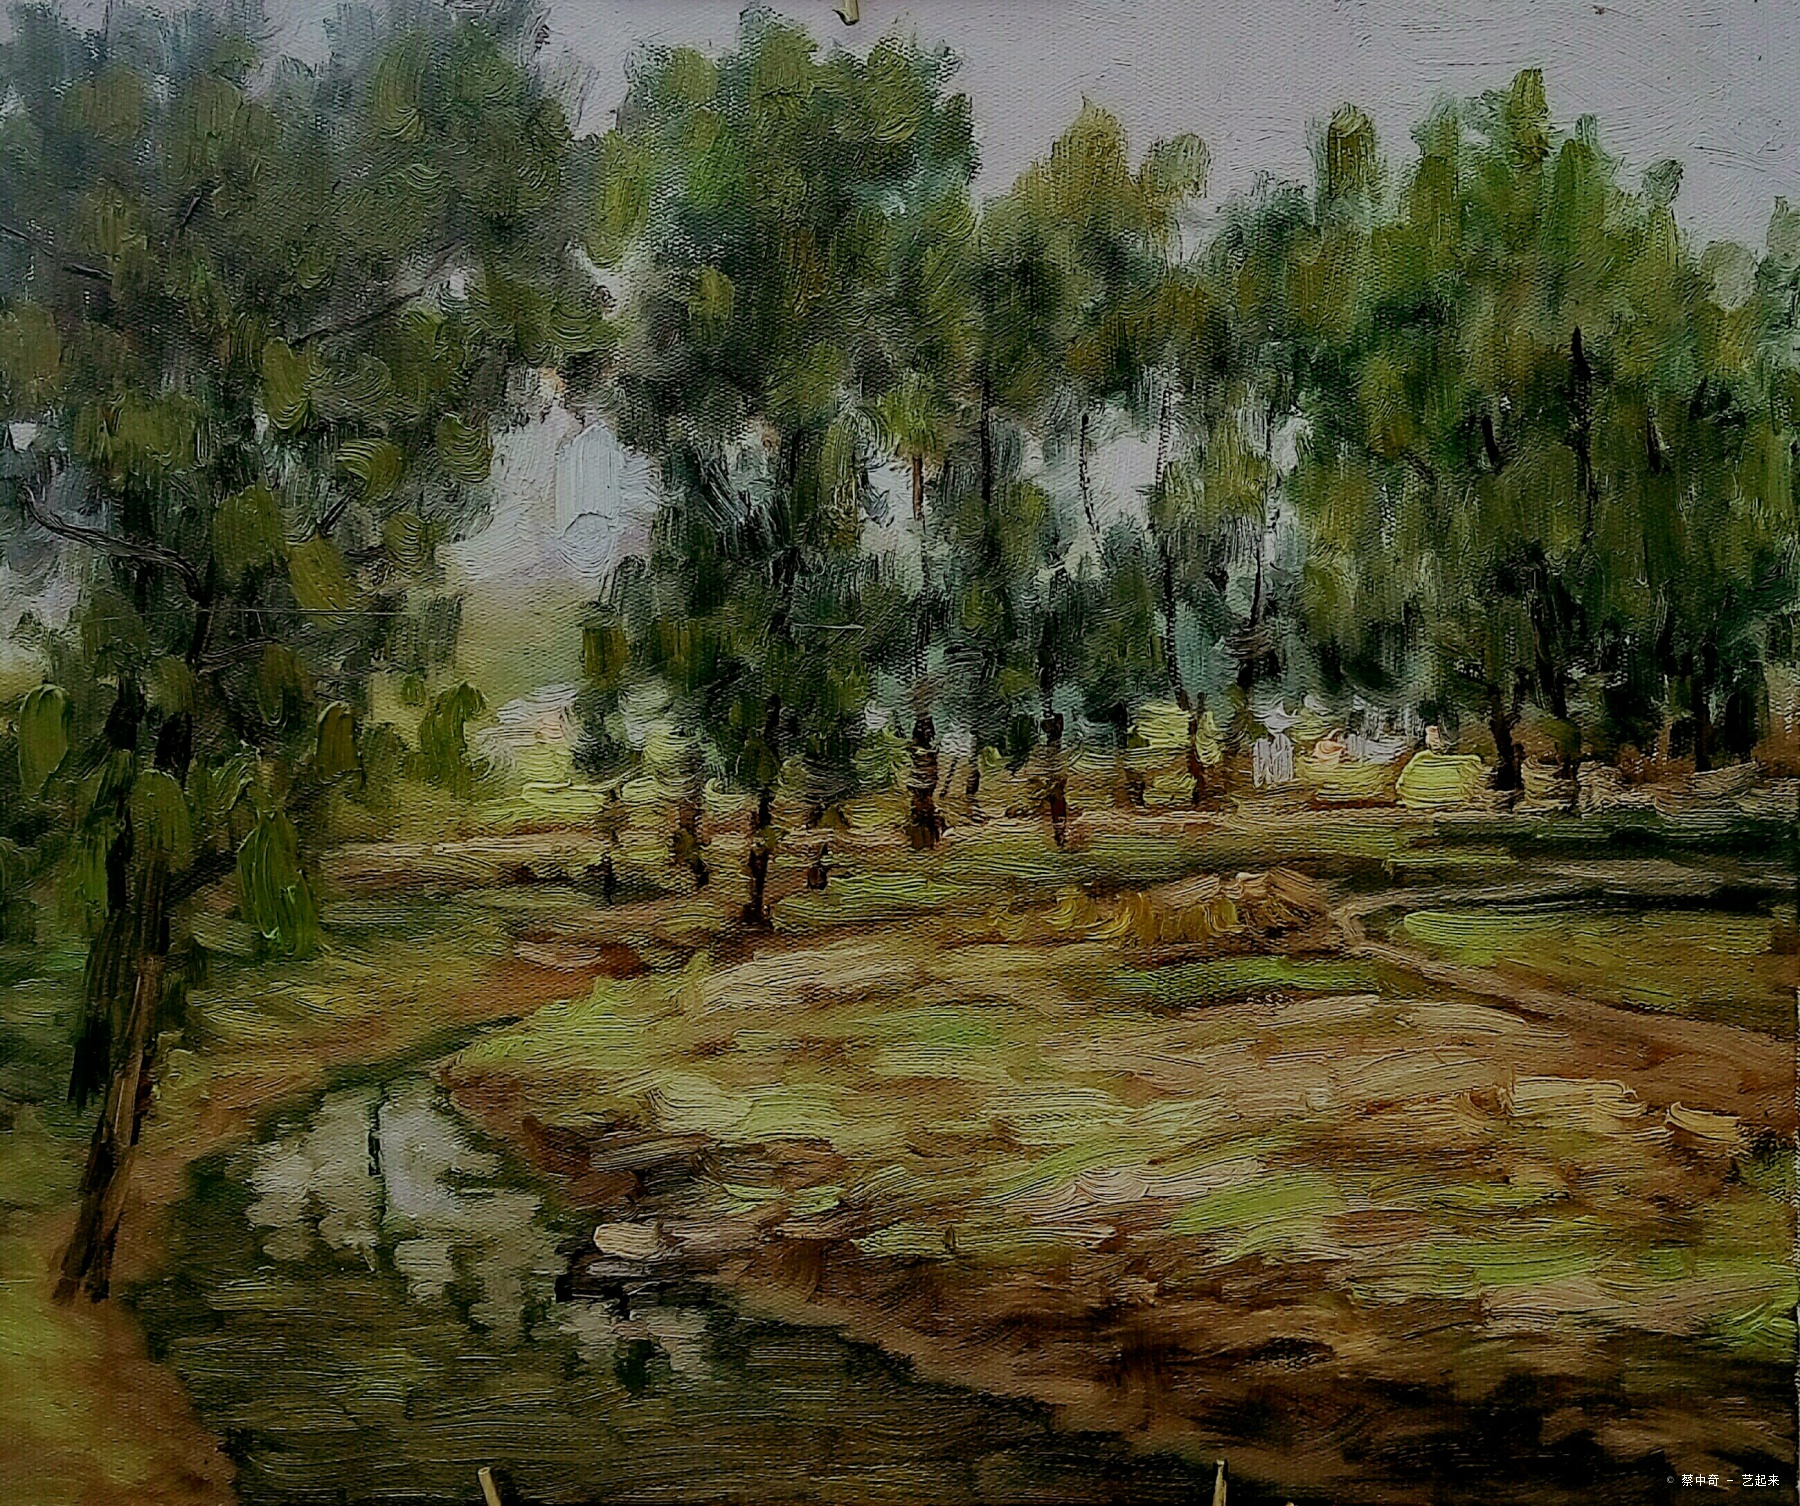 《琉璃埸小沙河写生》，布面油画，50x60cm，2017年5月